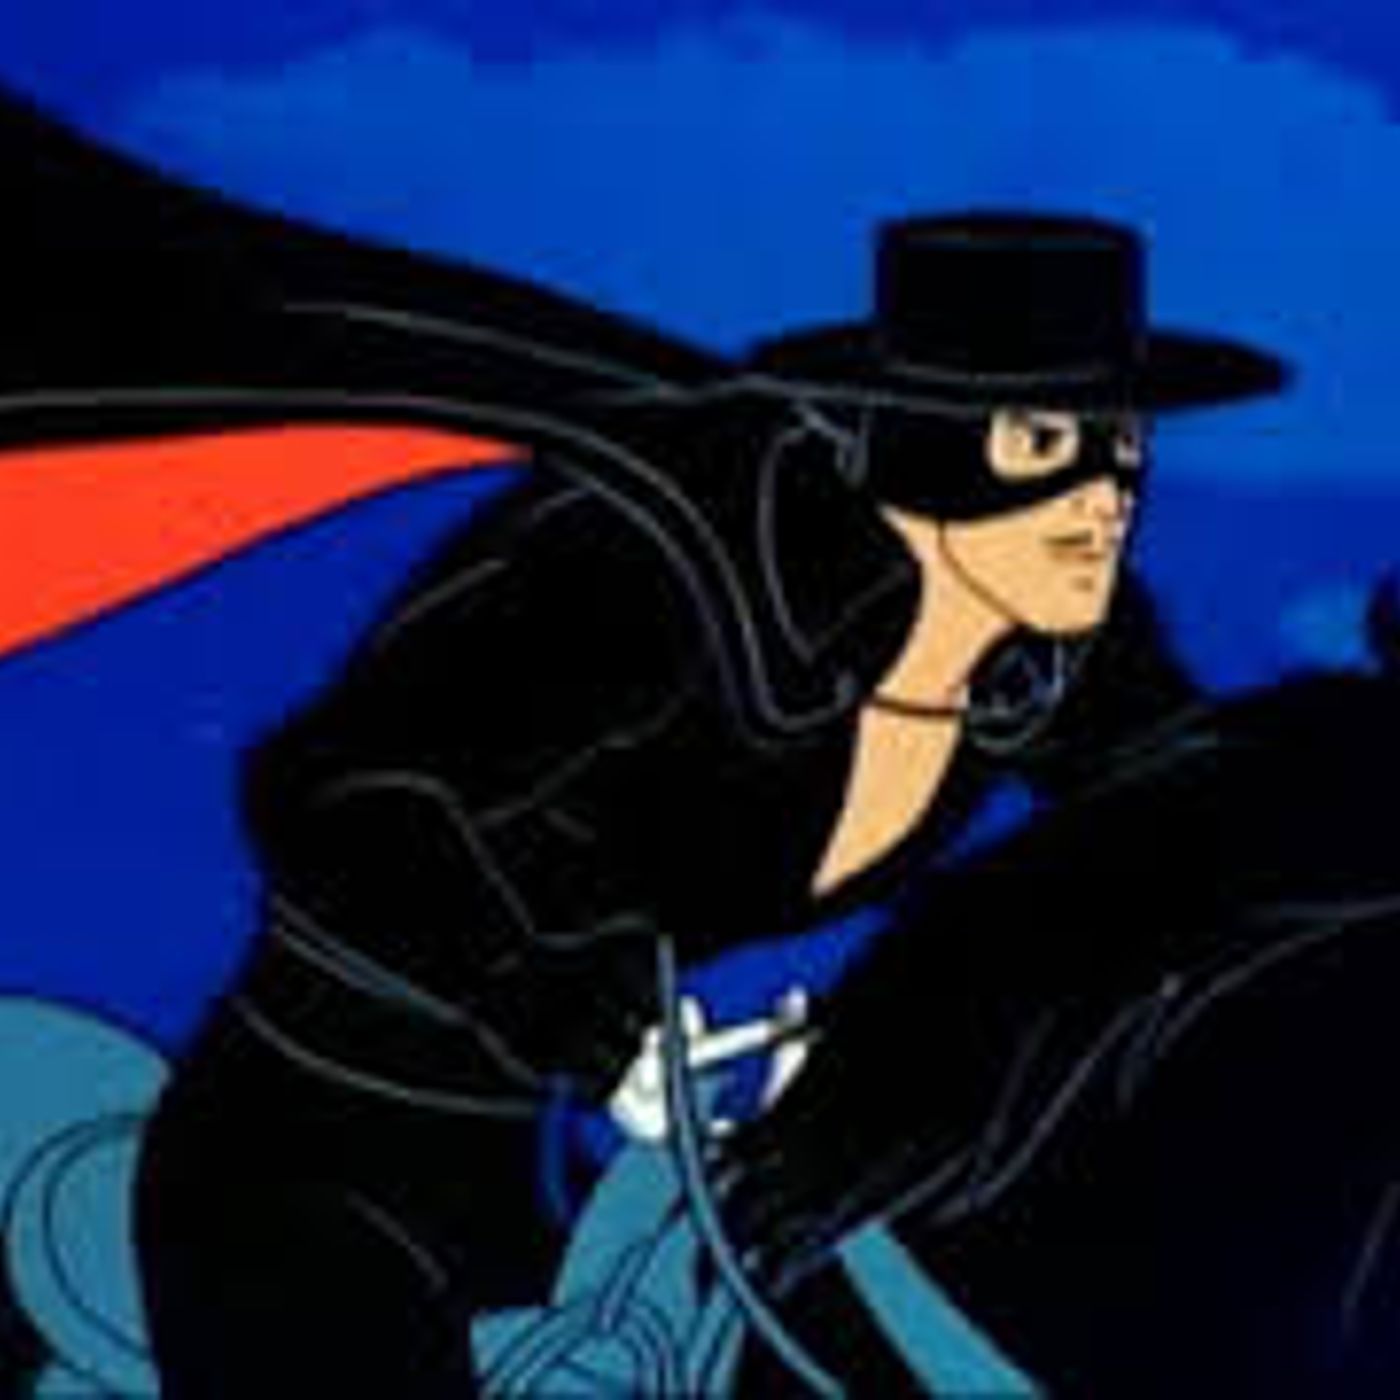 Zorro-XXXXXX Trial Of Father Philipe